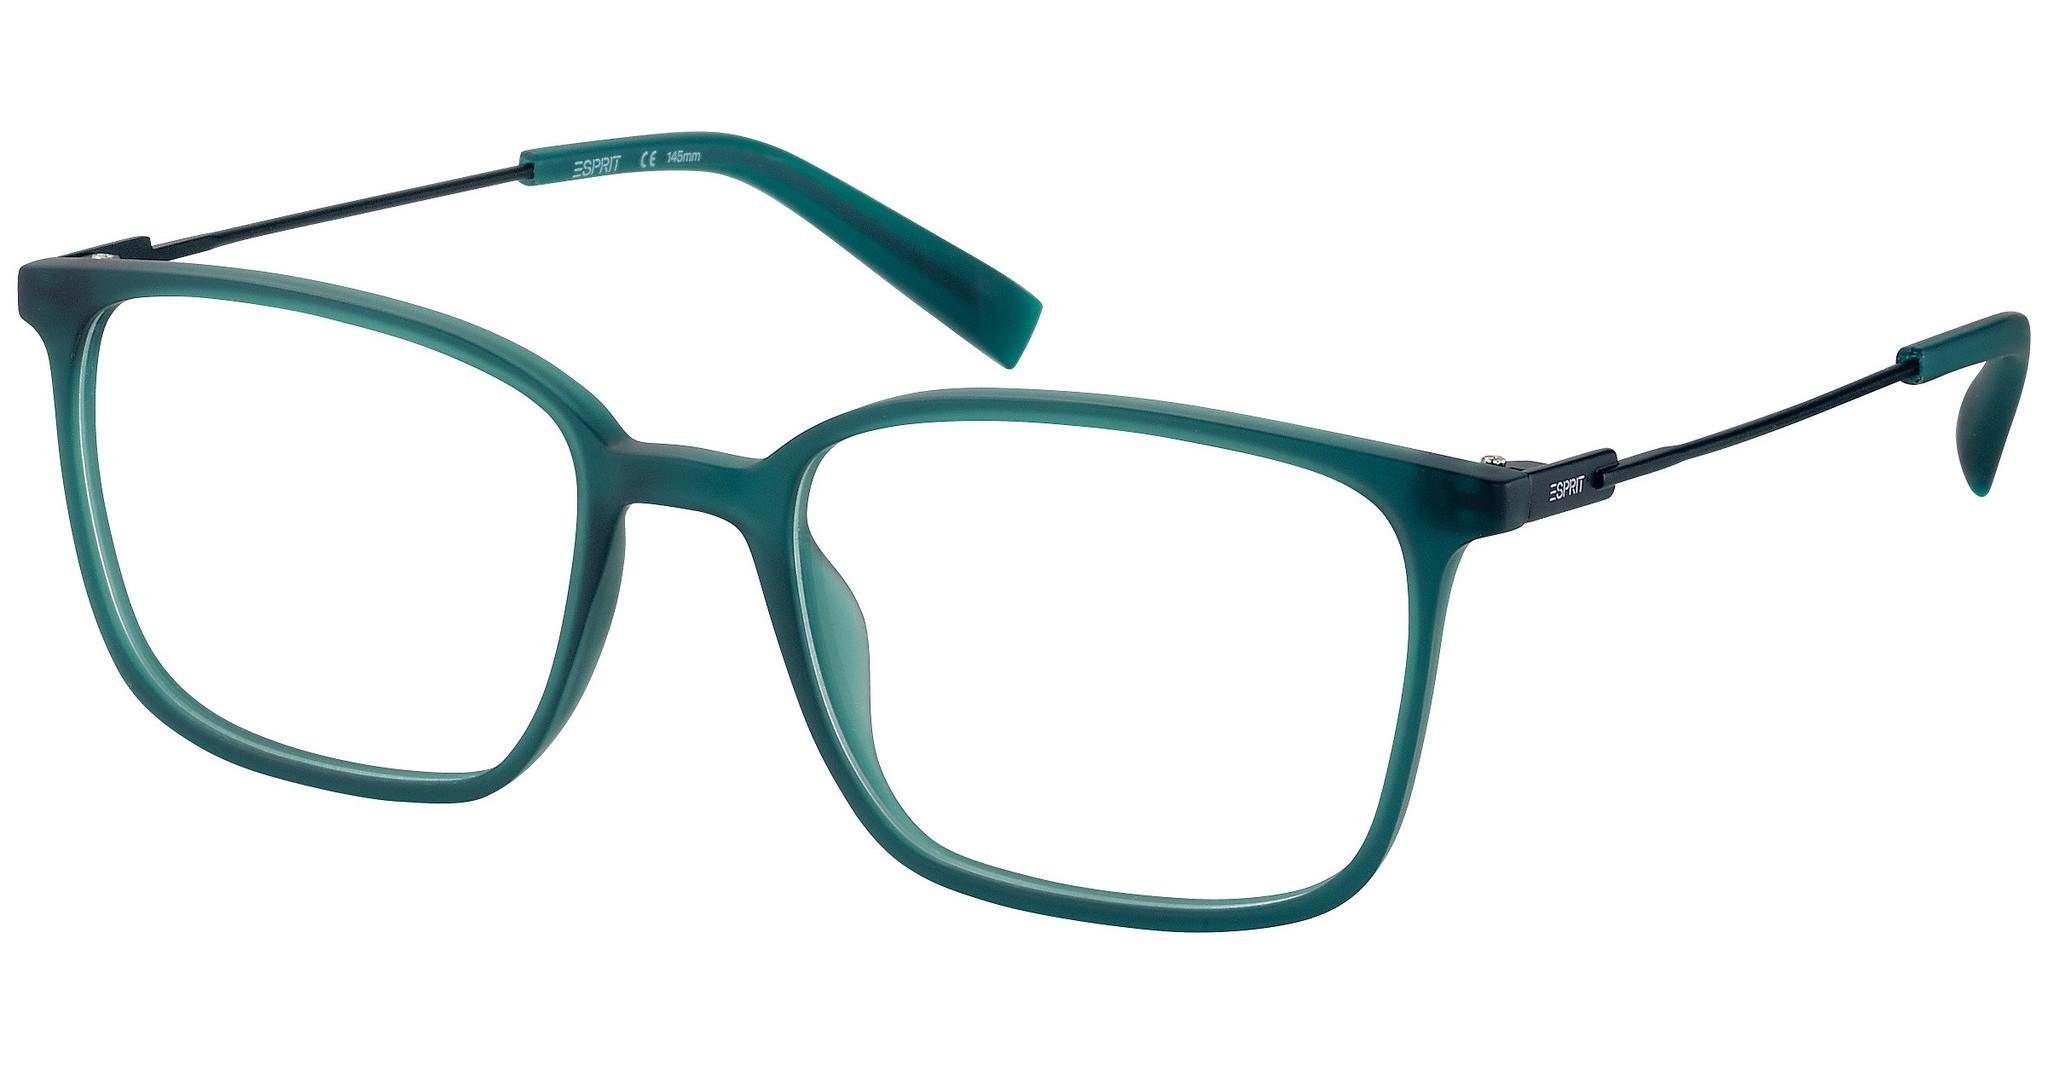 Originalprodukte zu sehr günstigen Preisen! Esprit Brille ET33429 grün